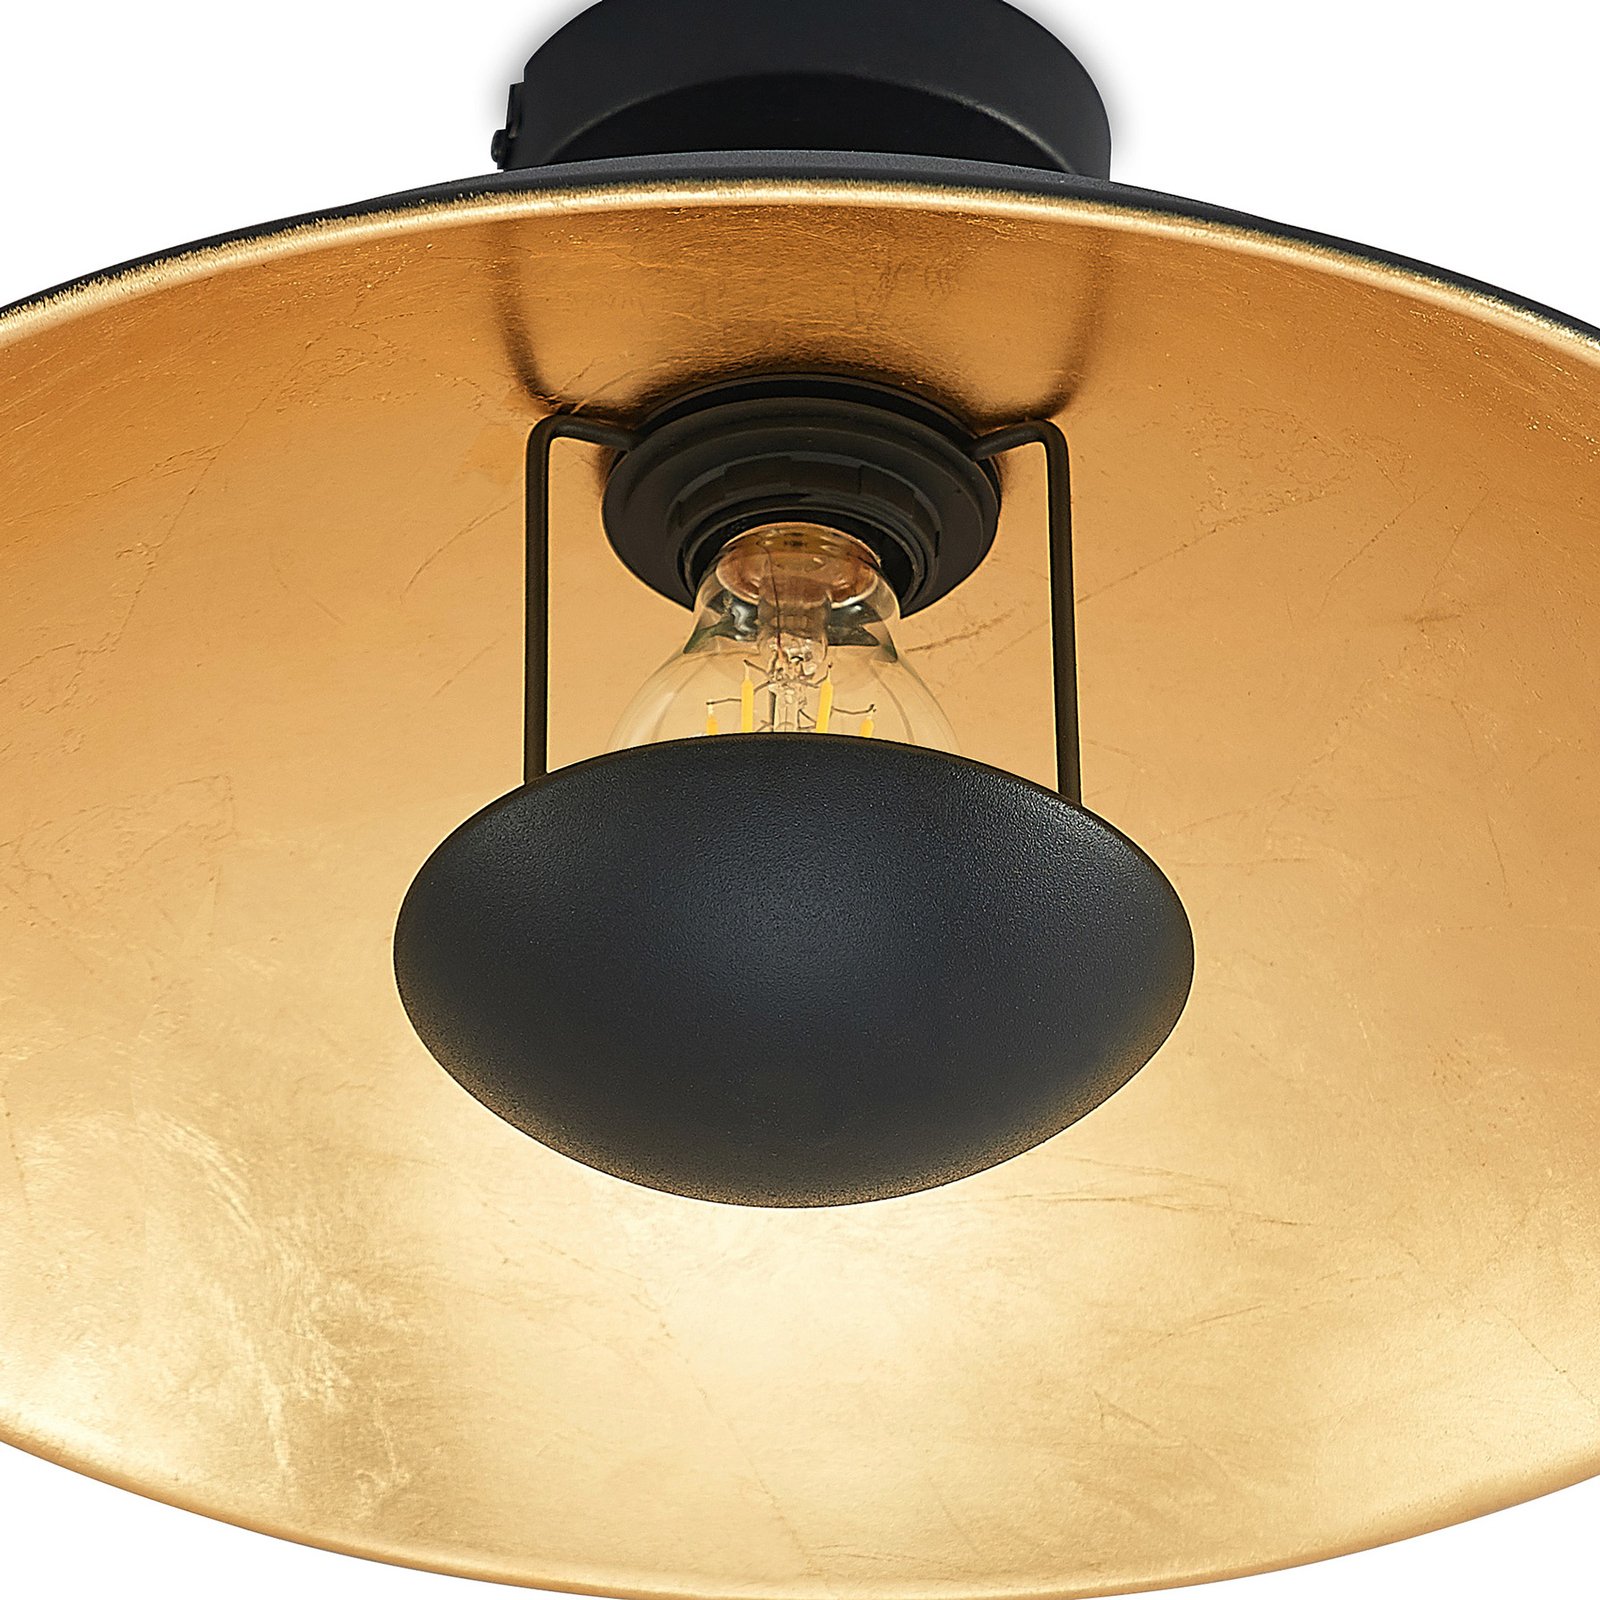 Lindby Narisara lámpara de techo, negro-oro, 40 cm